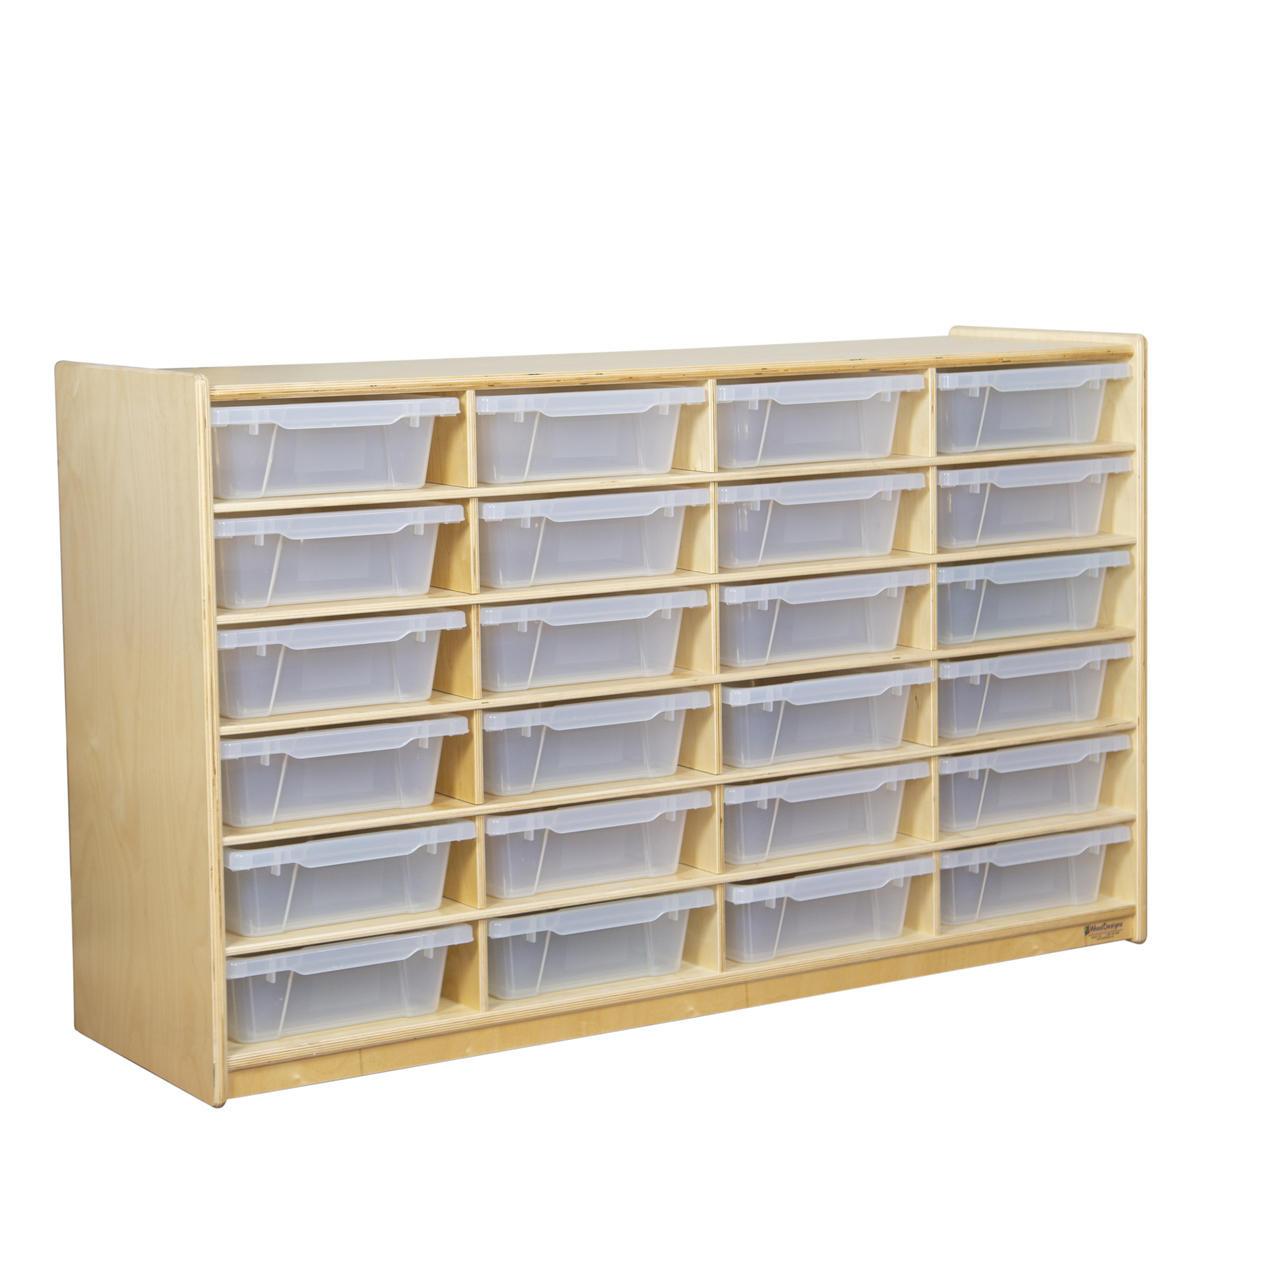 Craft Supply Storage, Paper Storage, Letter Tray Organizer With 8